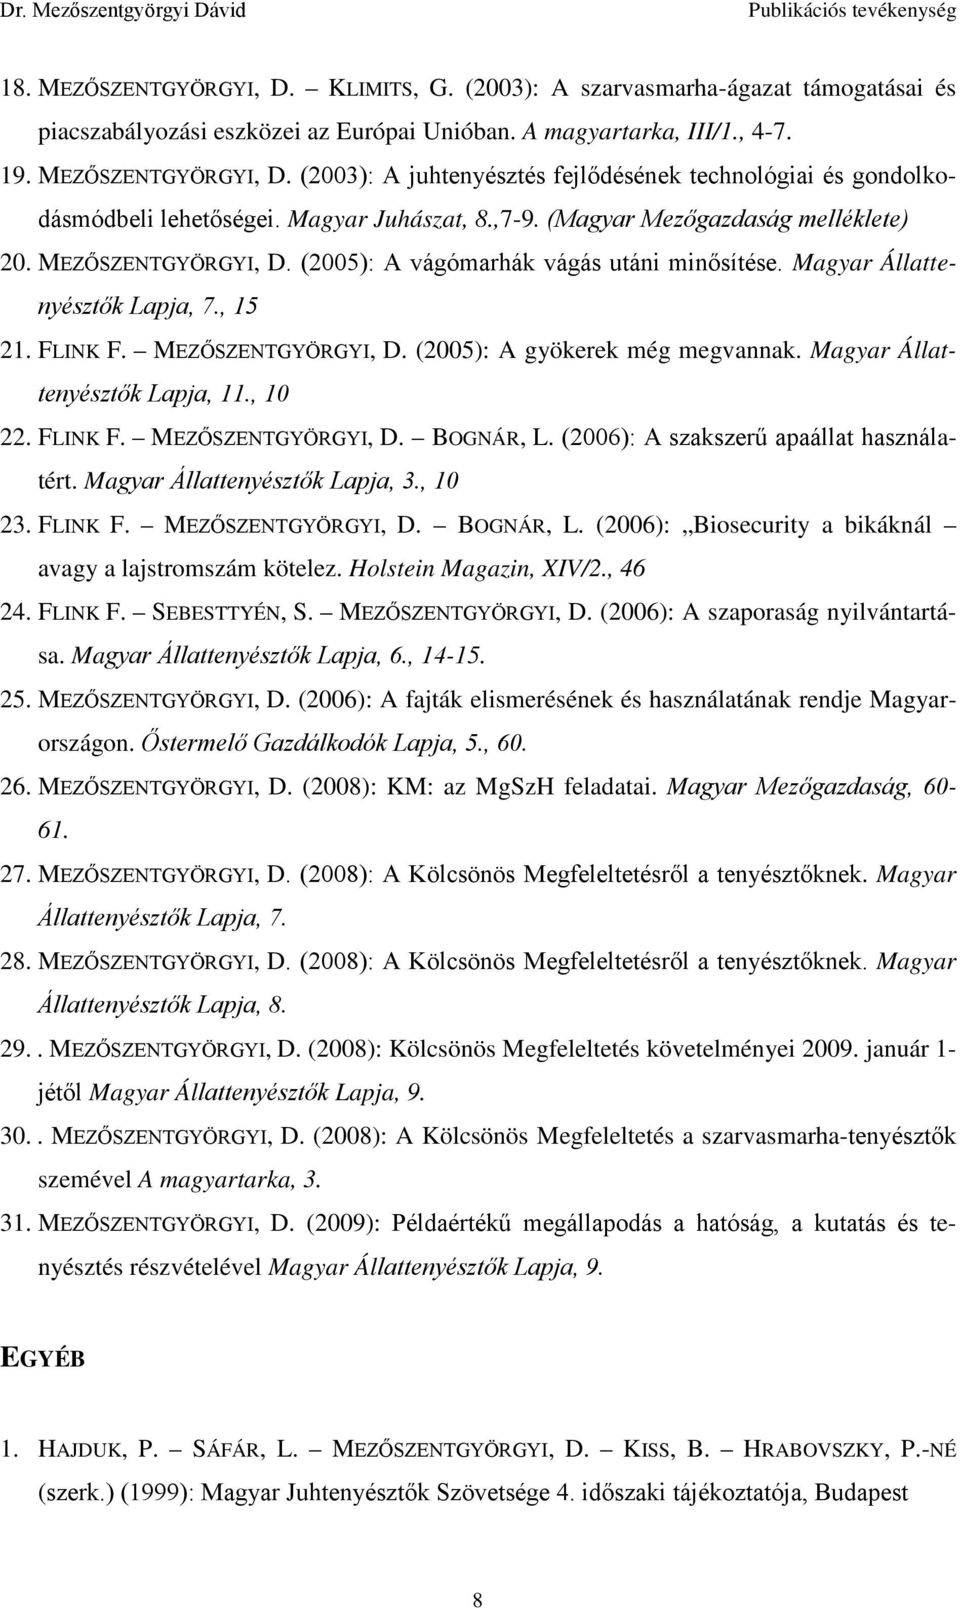 Magyar Állattenyésztők Lapja, 11., 10 22. FLINK F. MEZŐSZENTGYÖRGYI, D. BOGNÁR, L. (2006): A szakszerű apaállat használatért. Magyar Állattenyésztők Lapja, 3., 10 23. FLINK F. MEZŐSZENTGYÖRGYI, D. BOGNÁR, L. (2006): Biosecurity a bikáknál avagy a lajstromszám kötelez.